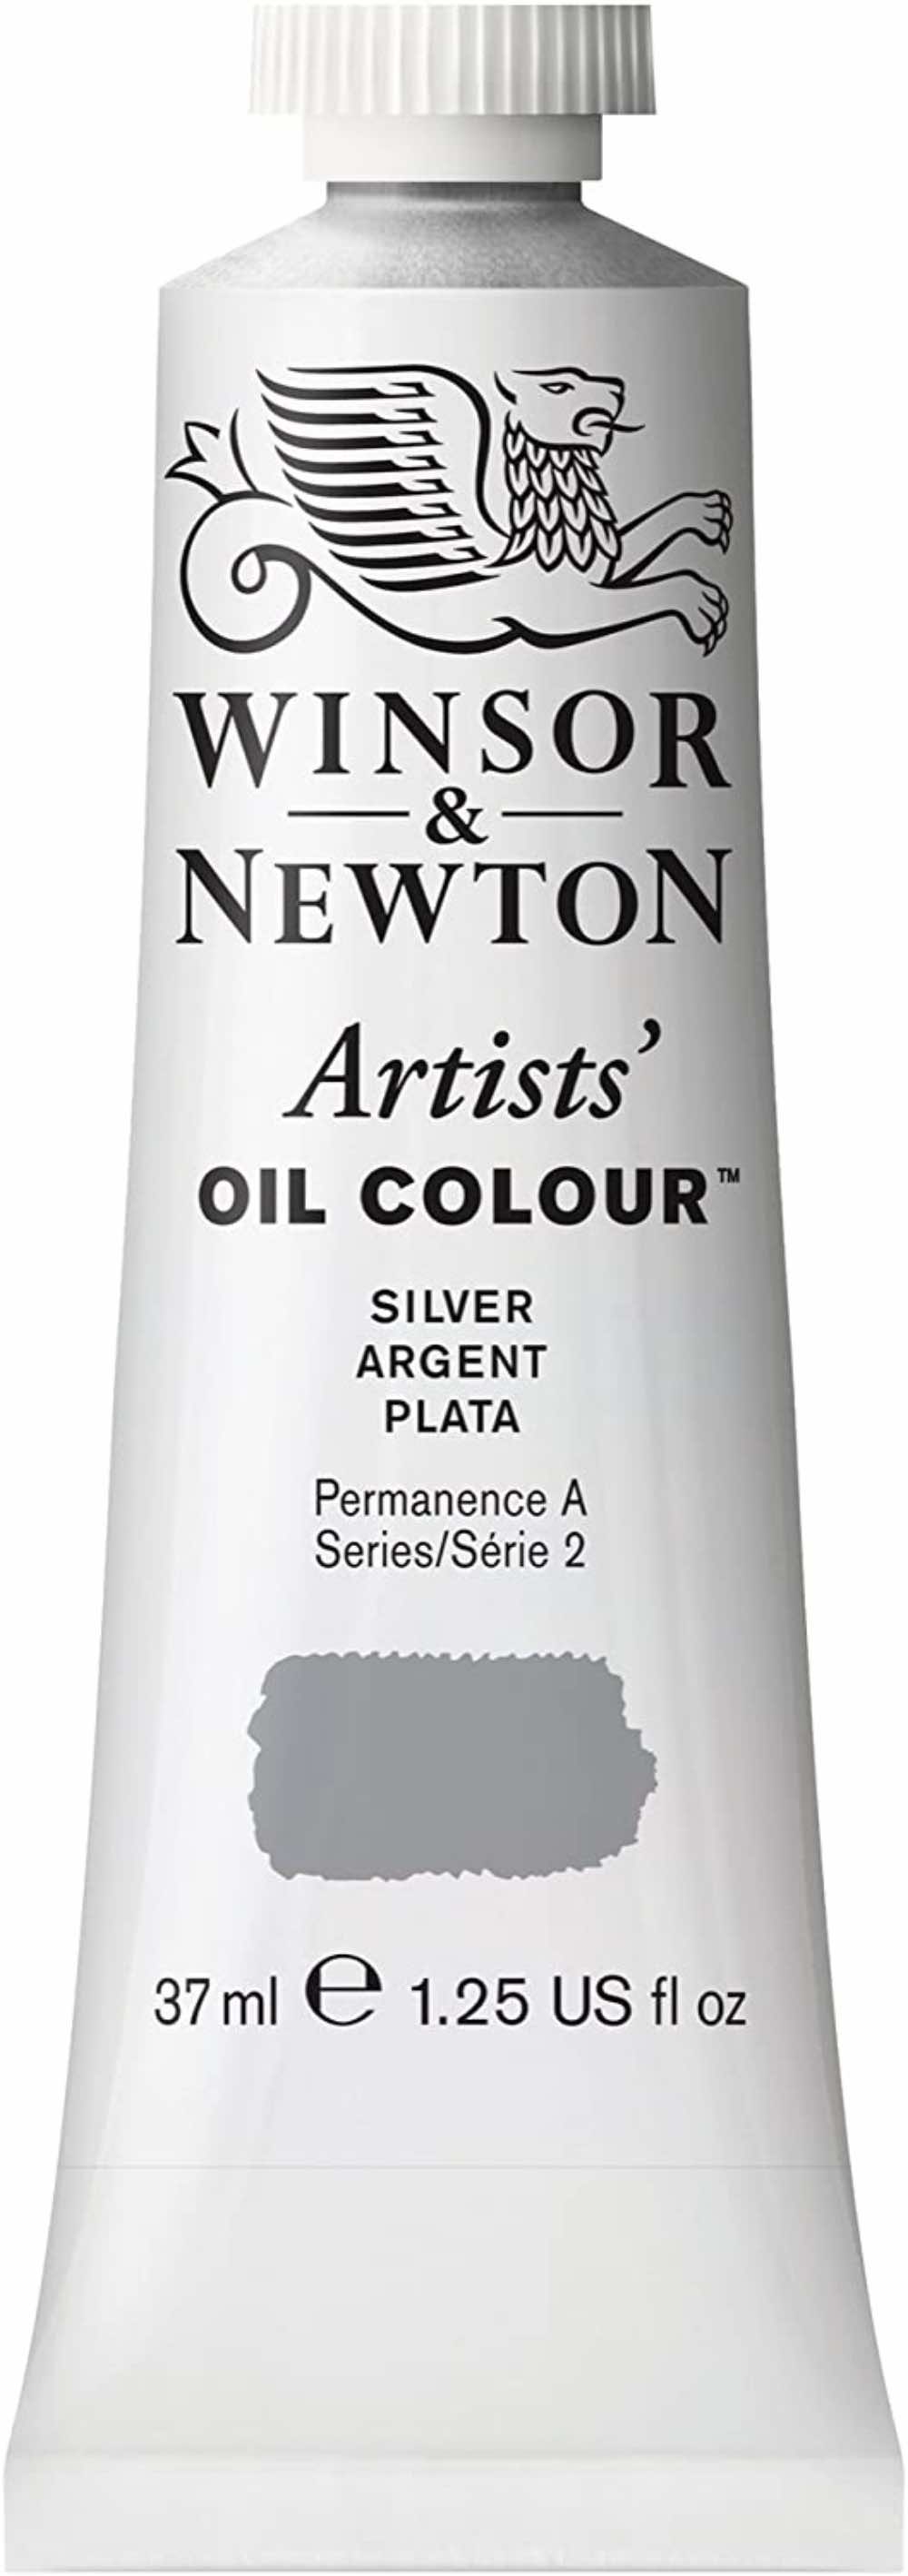 Winsor & Newton Artists' Oil Color